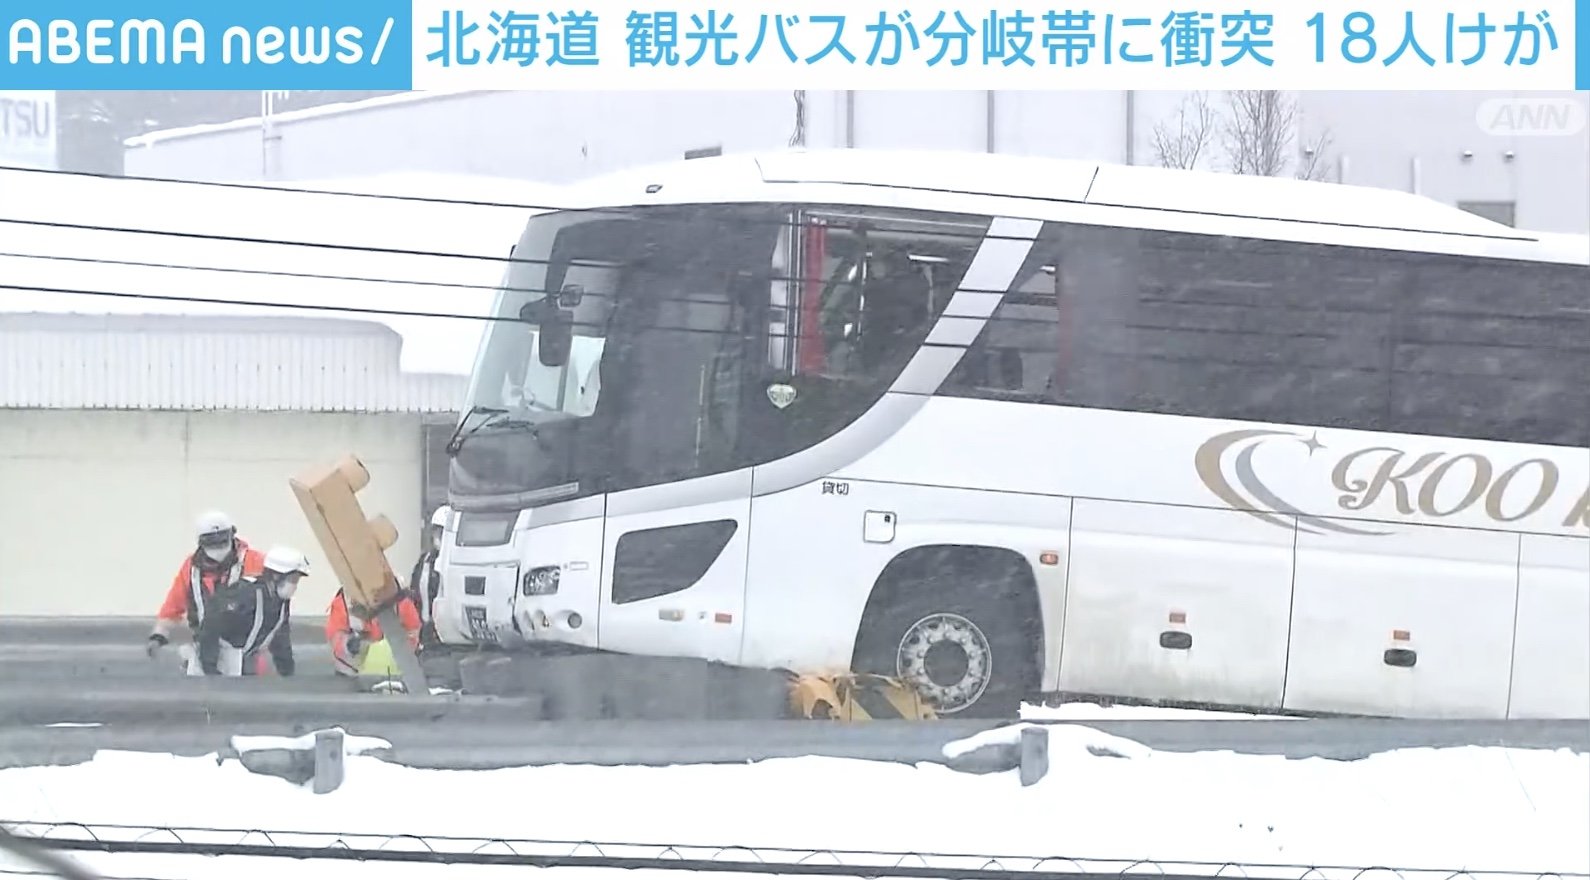 観光バスが分岐帯に衝突 外国人観光客18人けが 北海道 旭川市 国内 Abema Times